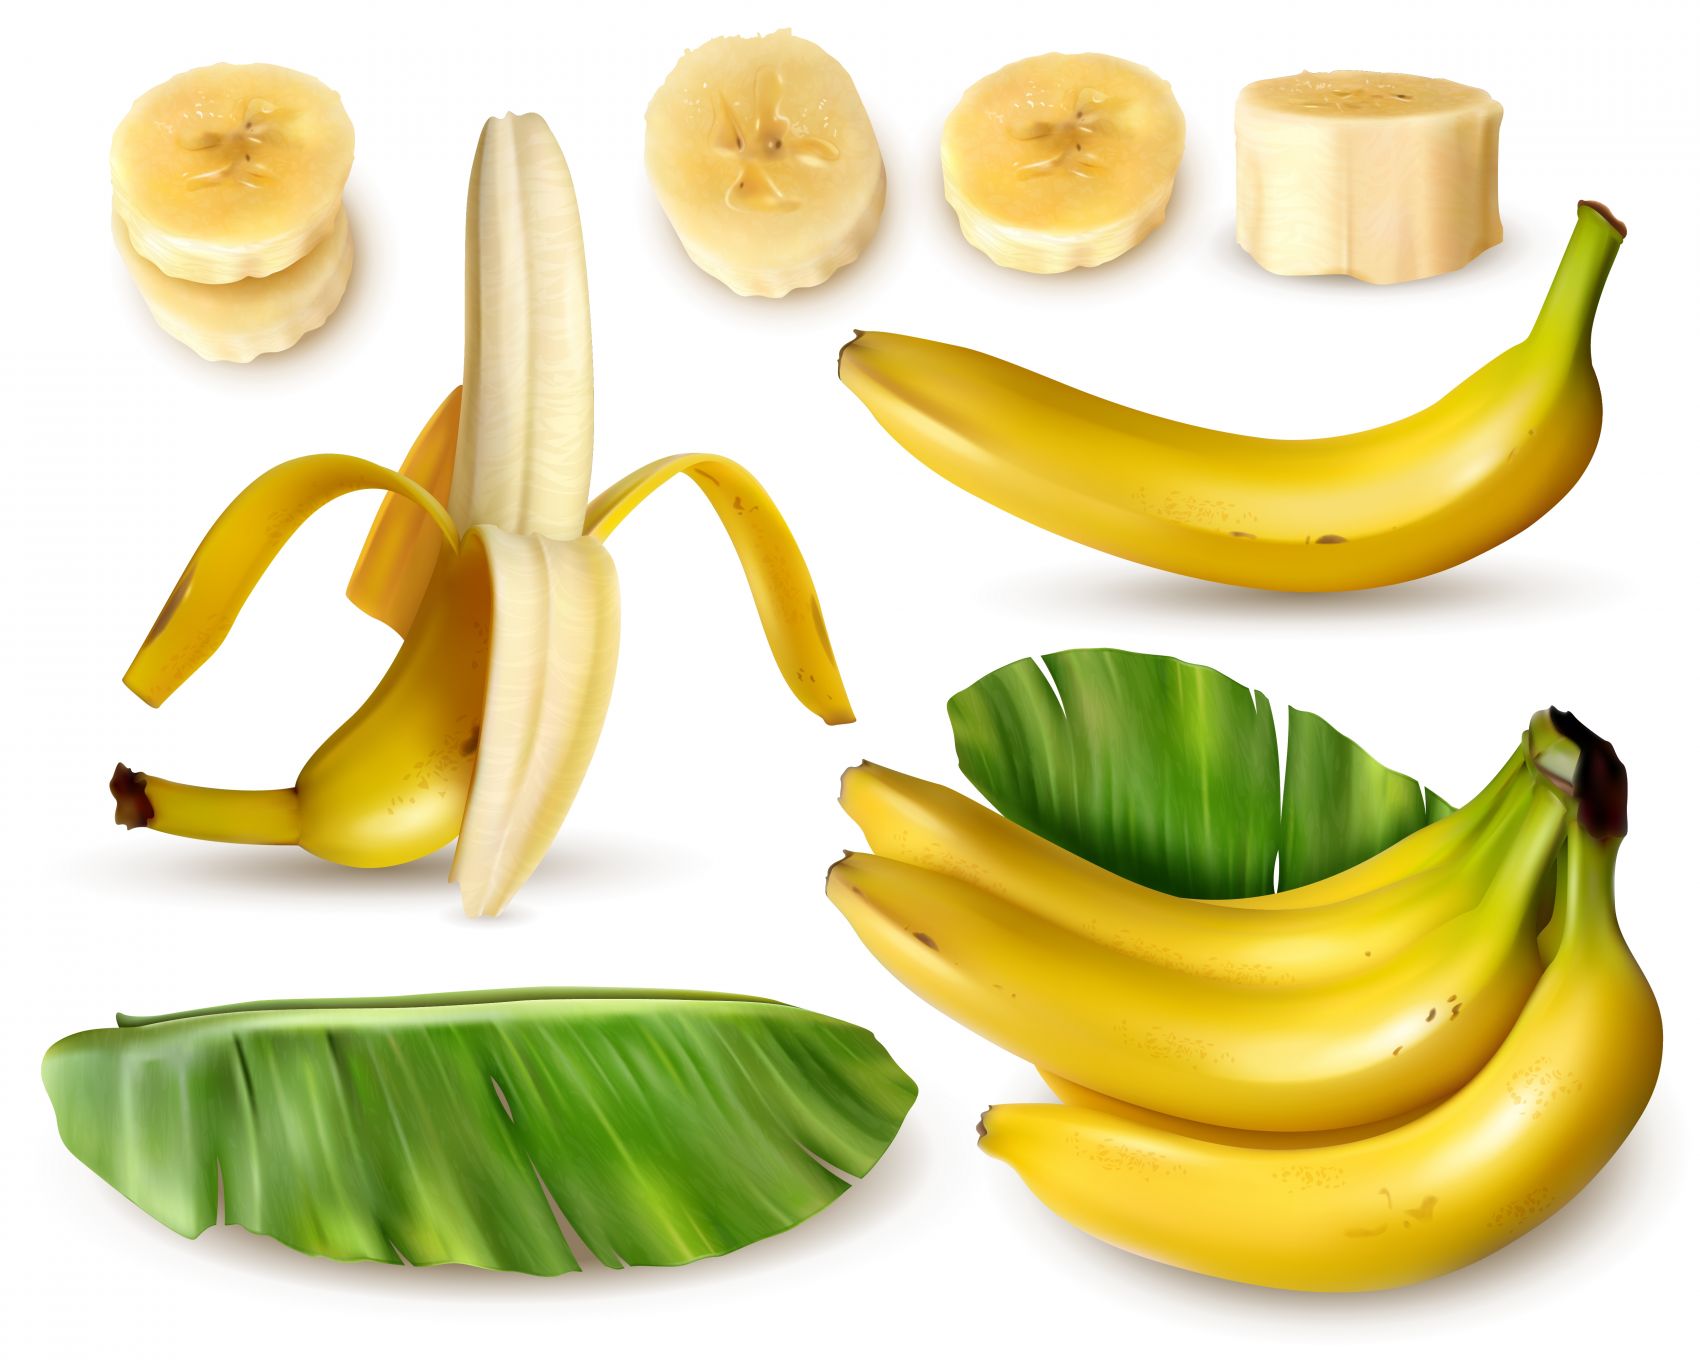 图片素材 : 香蕉, 切片, 件, 水果 4928x3264 - - 1371403 - 素材中国, 高清壁纸 - PxHere摄影图库